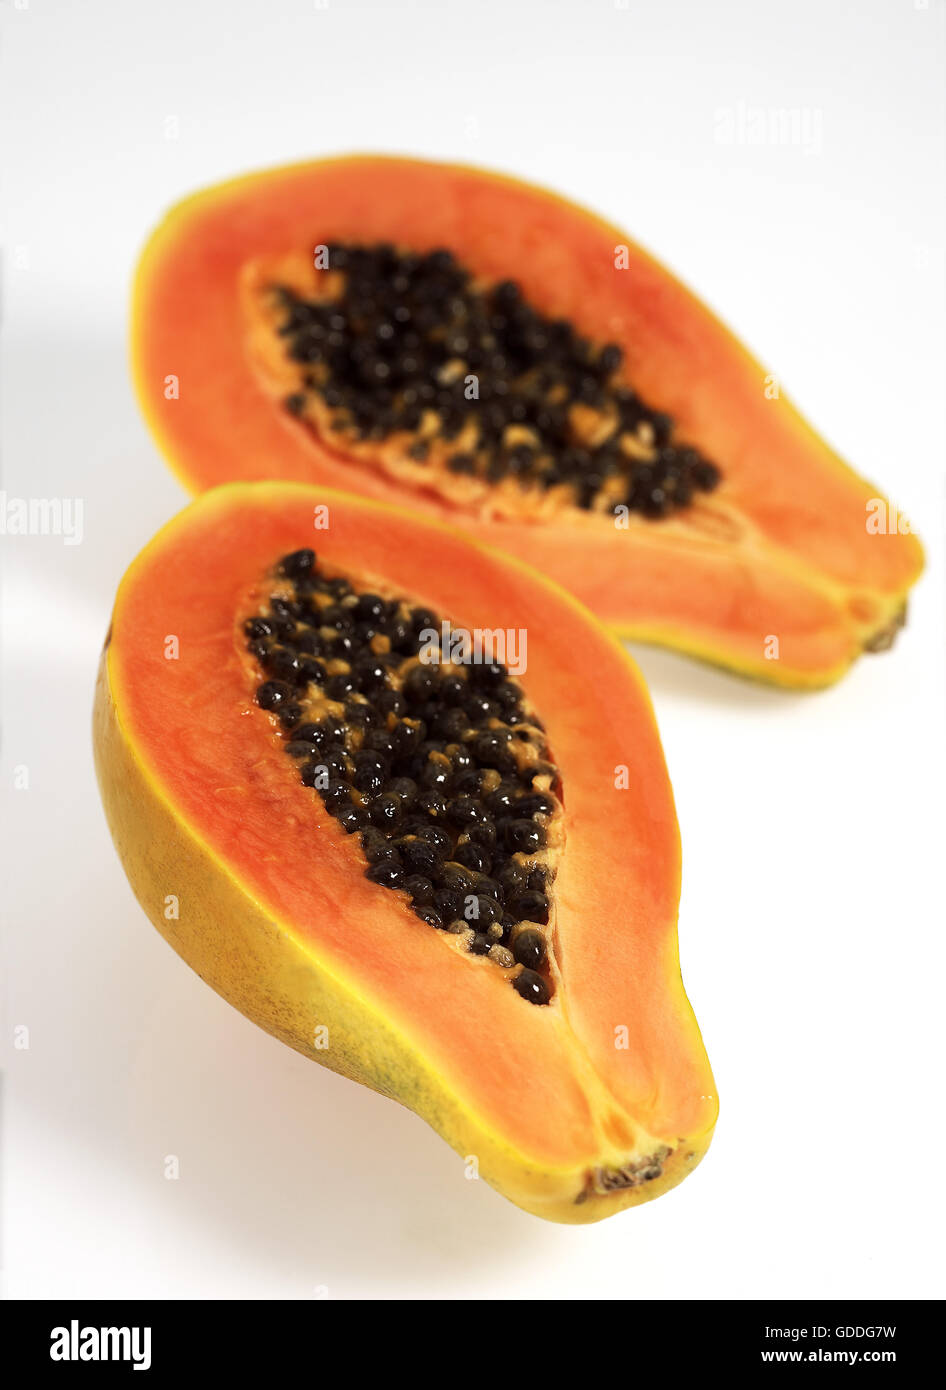 Paw Paw or Papaya, carica papaya, Exotic Fruit against White Background Stock Photo